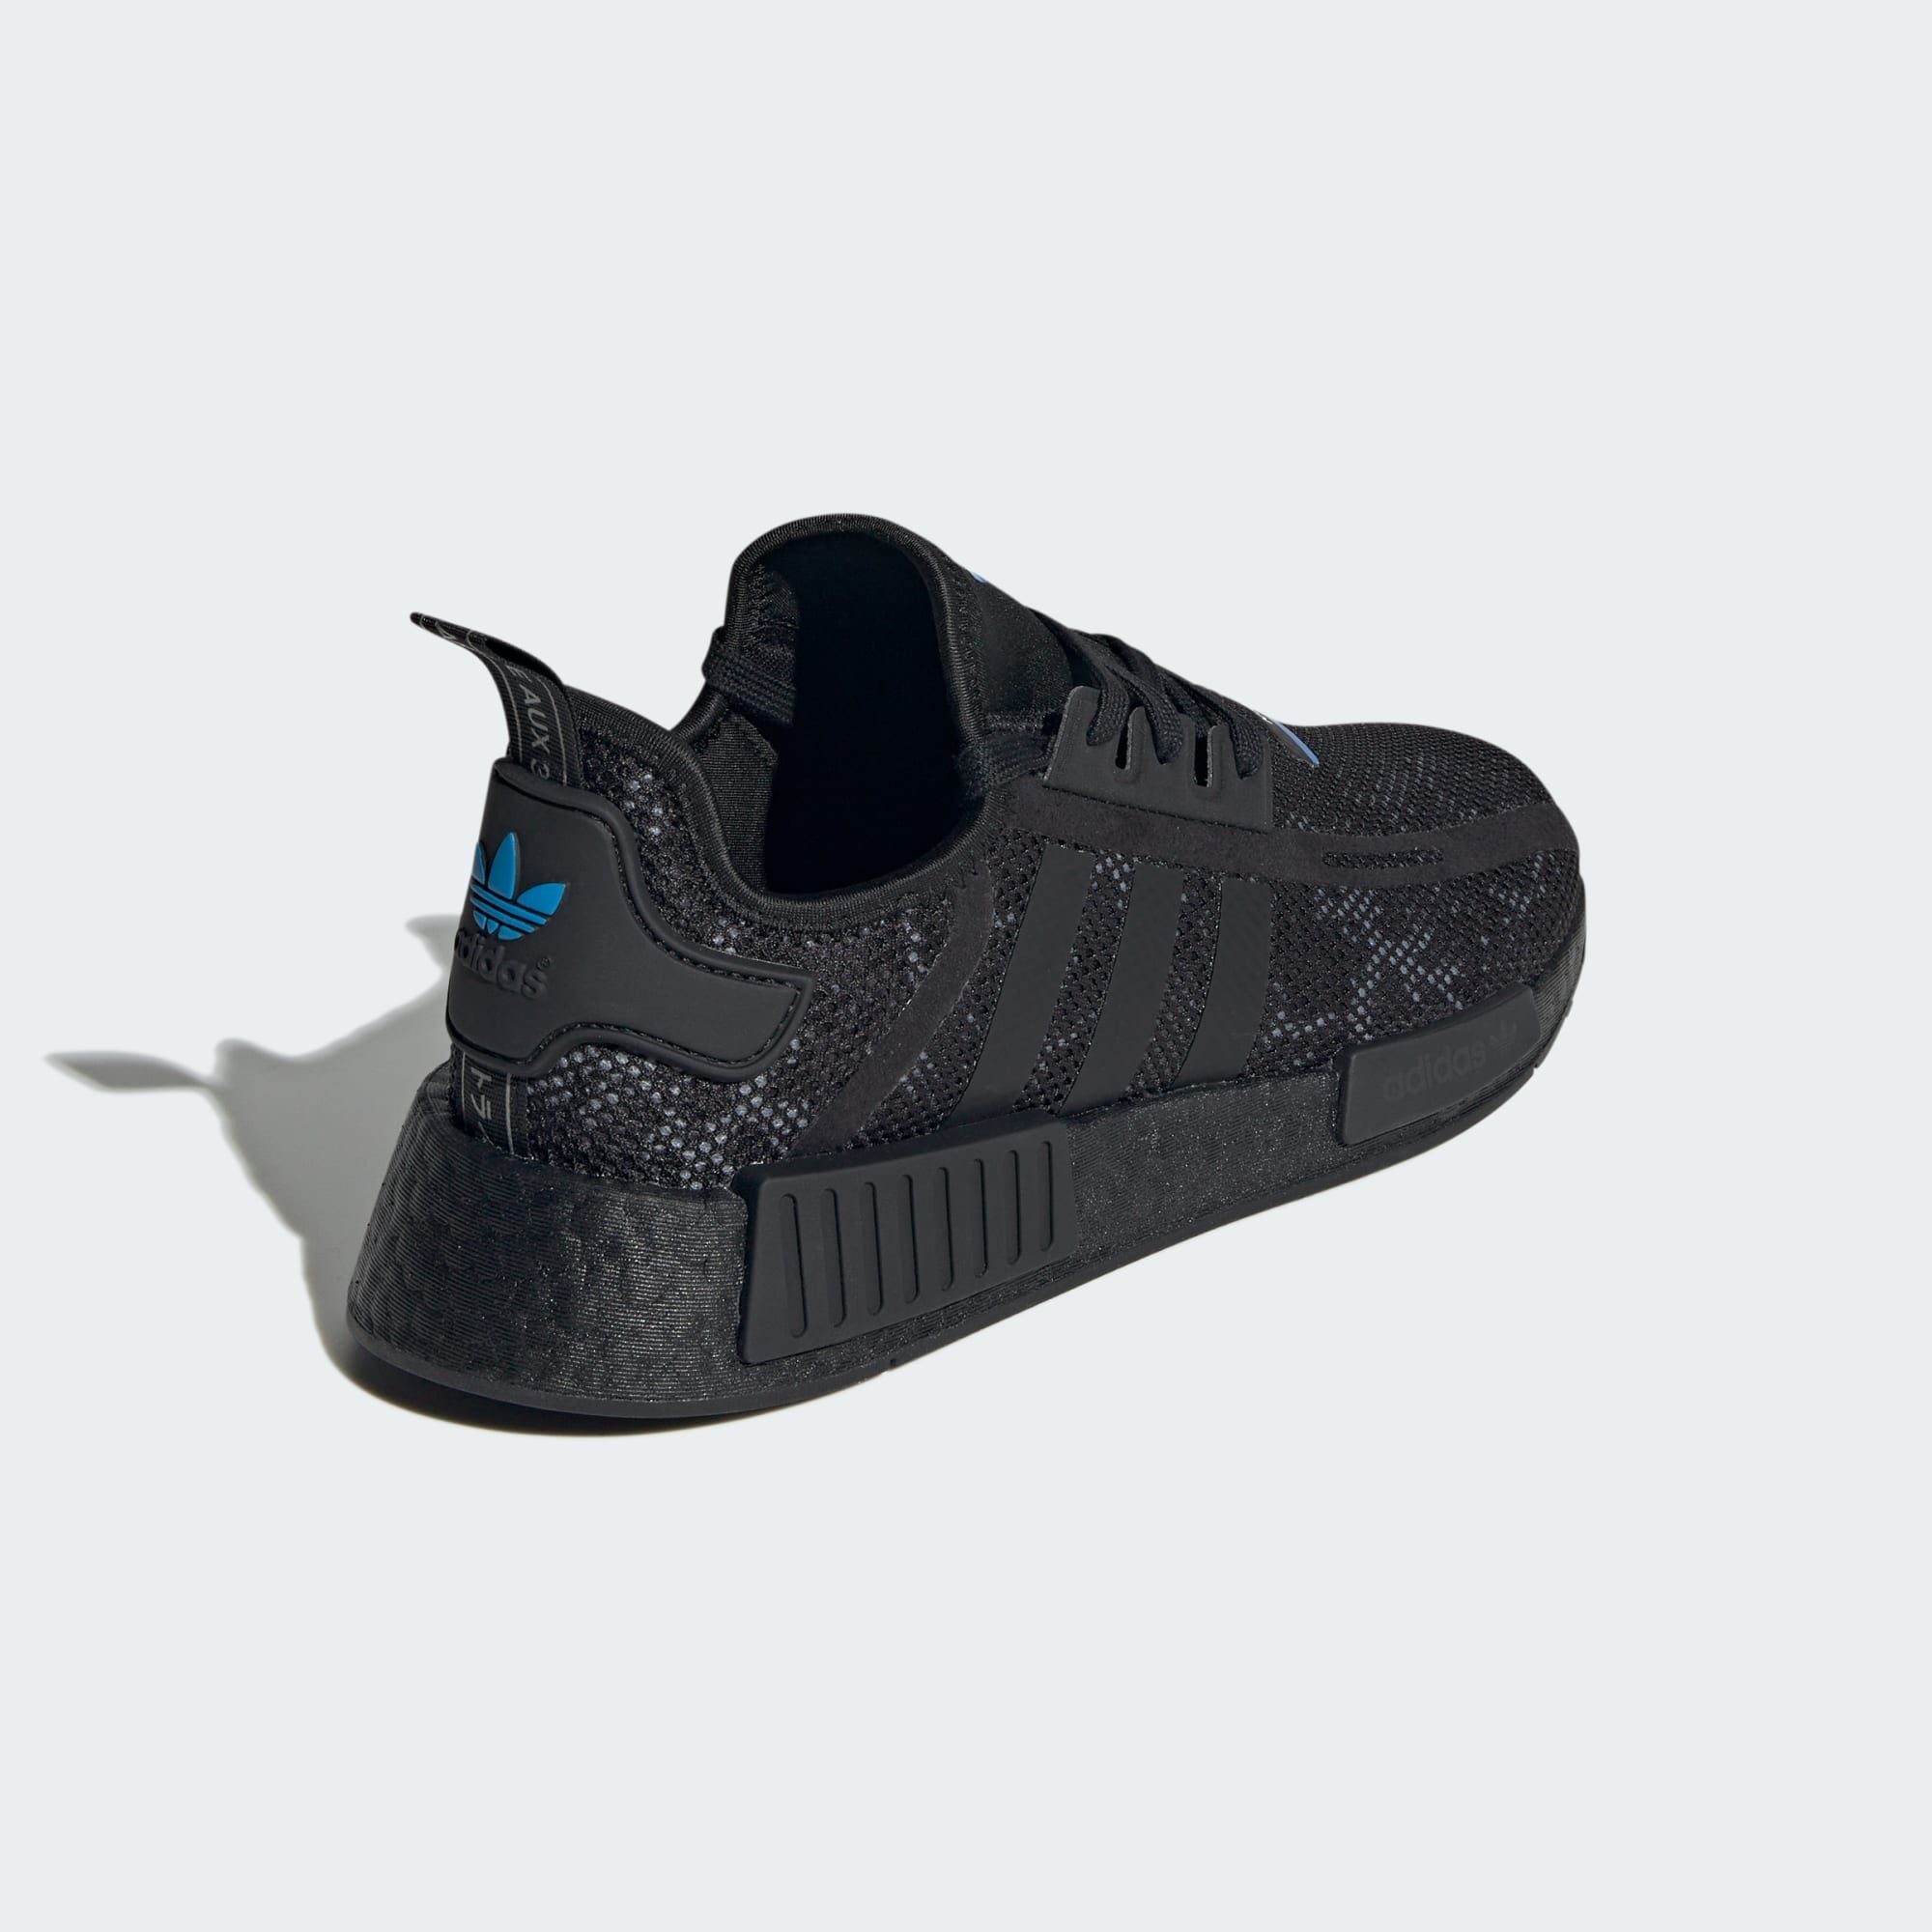 Core / SCHUH Five Grey Carbon adidas NMD_R1 Originals Black / Sneaker